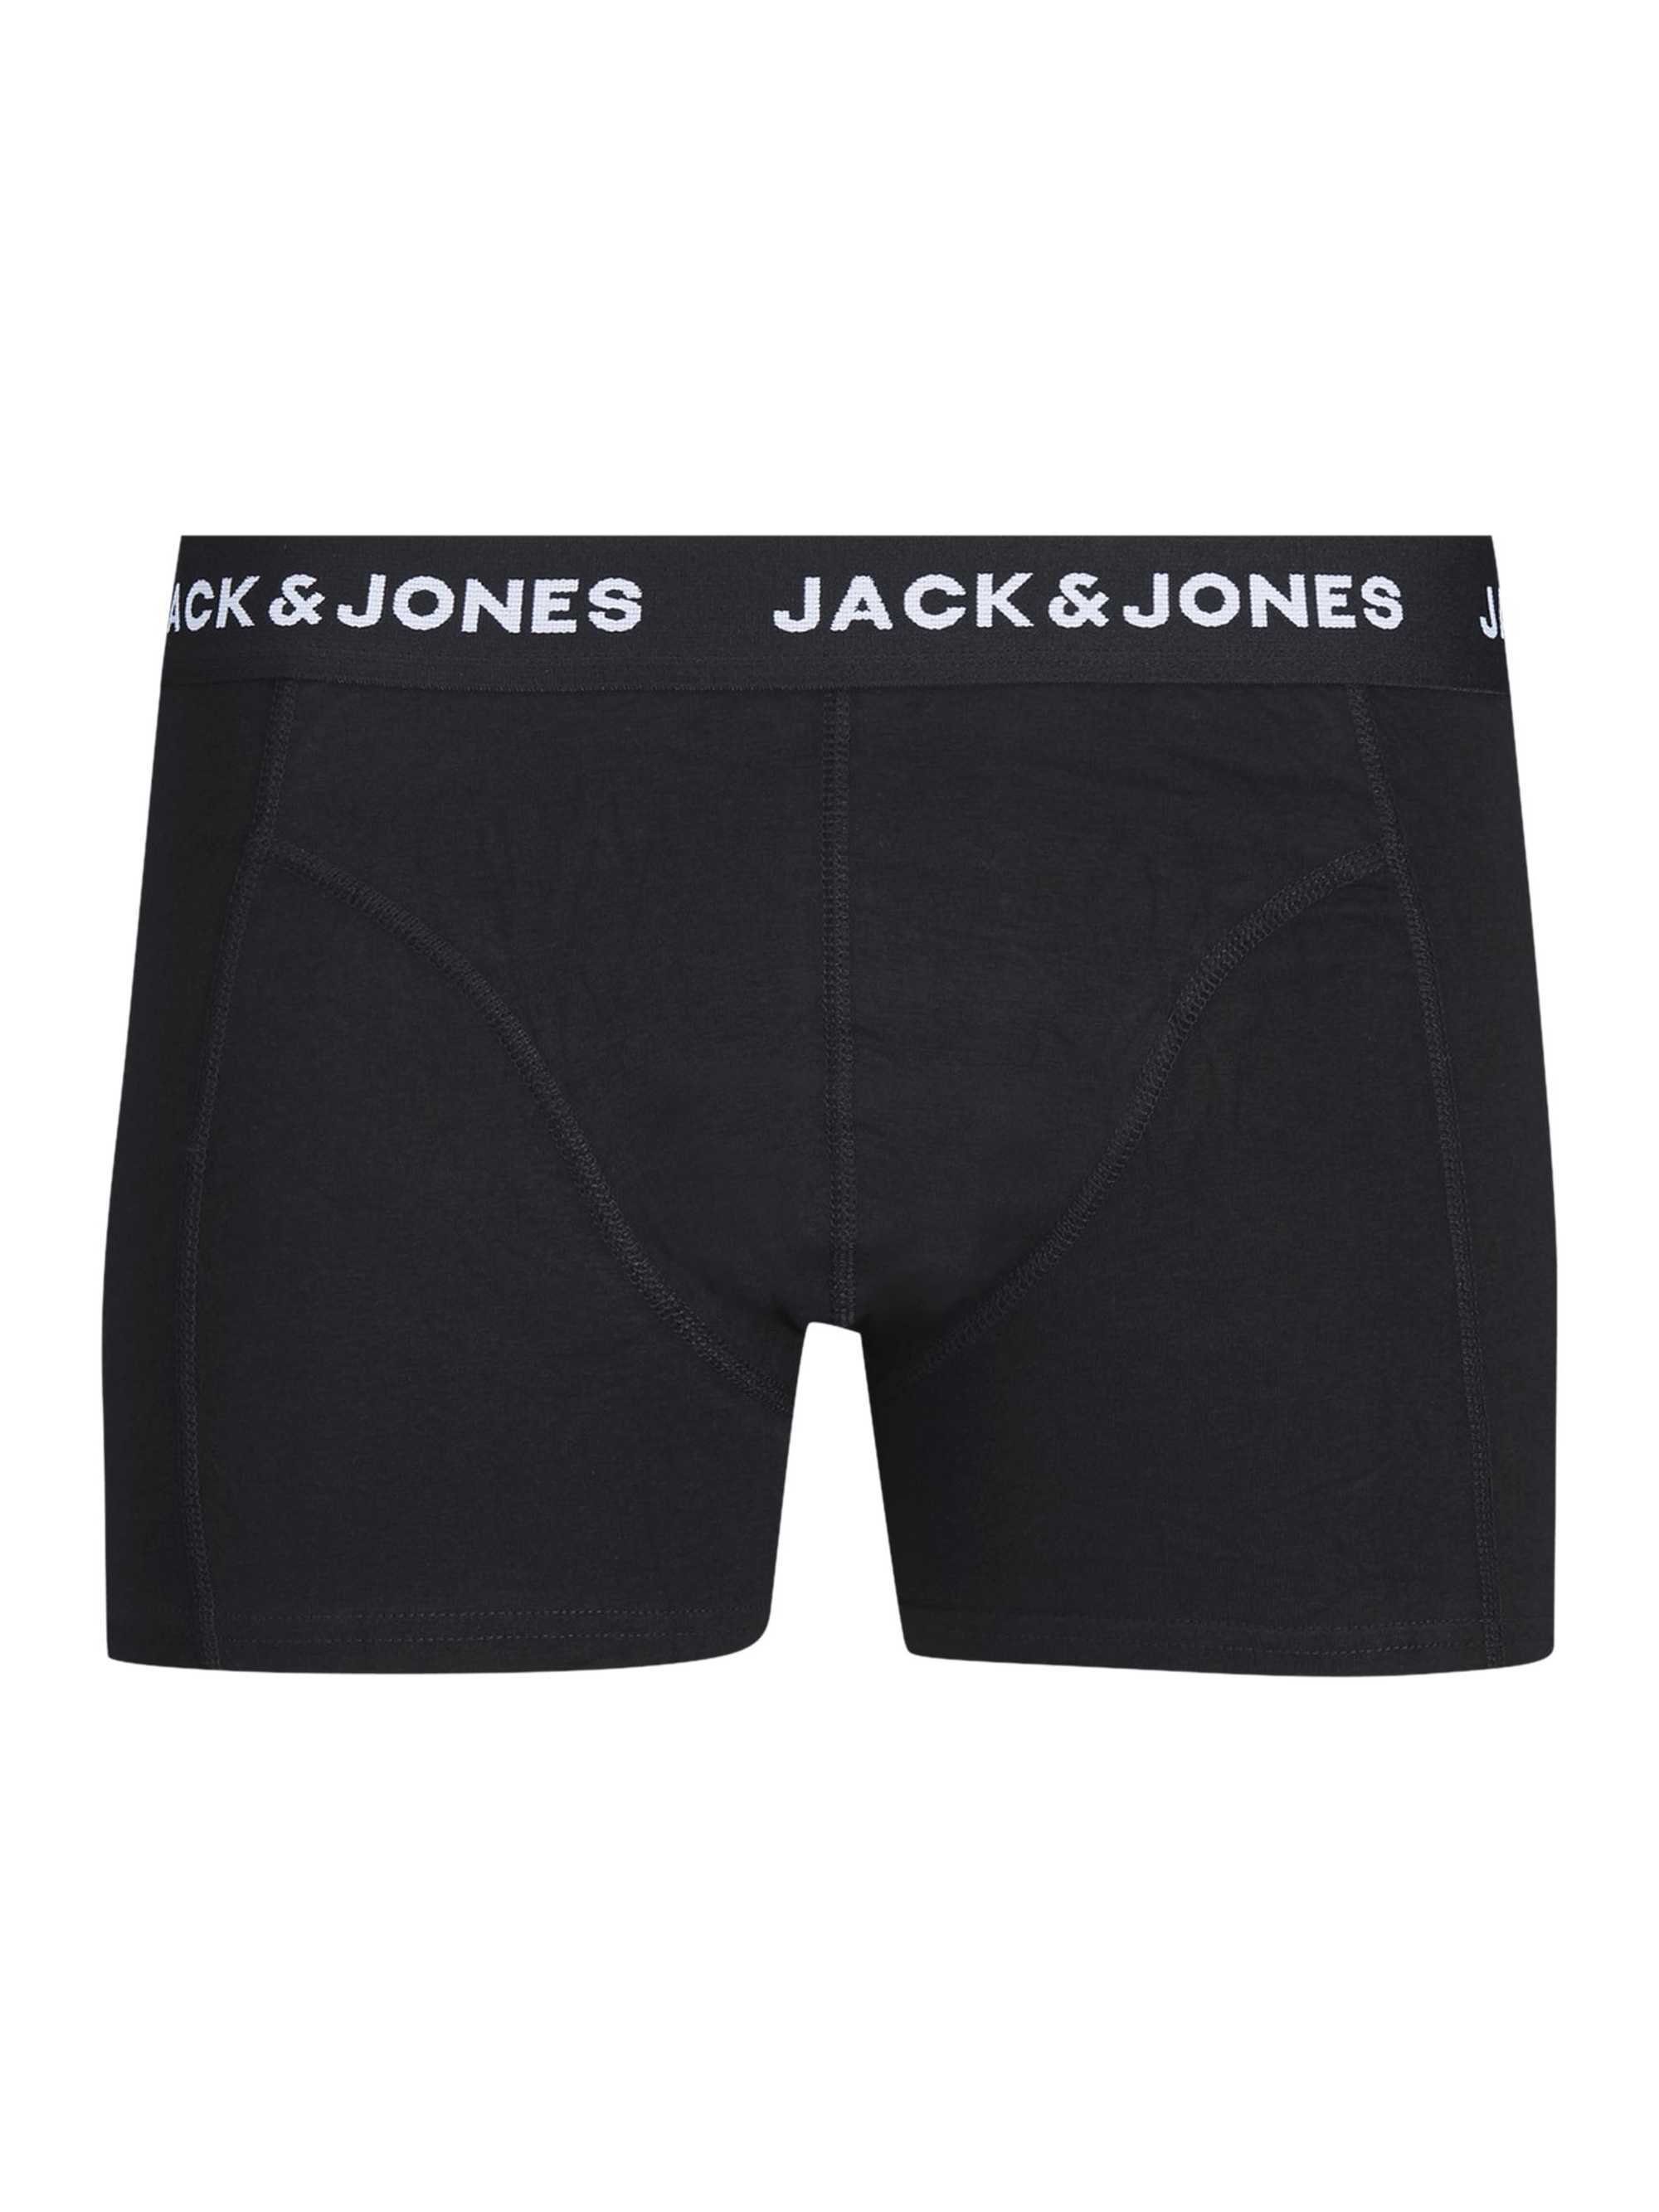 Jones Jack & Boxer - Trunks BASIC 7er Rot/Navy/Schwarz Herren JACSIMPLY Pack